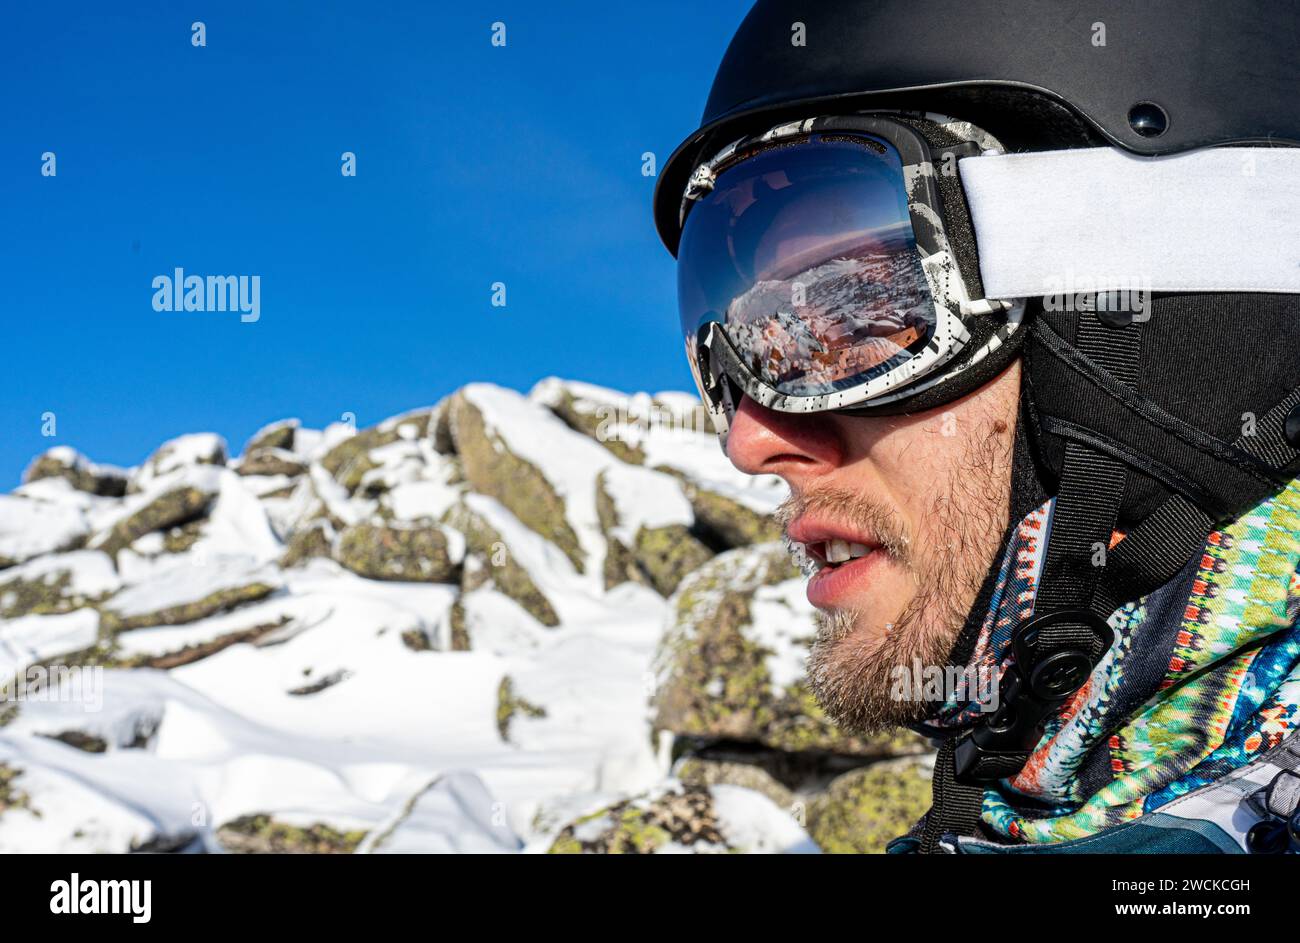 https://c8.alamy.com/compes/2wckcgh/equipo-de-esquiador-o-snowboarder-casco-negro-mascara-gafas-blancas-en-la-vista-lateral-del-hombre-fin-de-semana-de-vacaciones-de-deporte-activo-estacion-de-esqui-de-snowboard-al-sol-de-invierno-2wckcgh.jpg